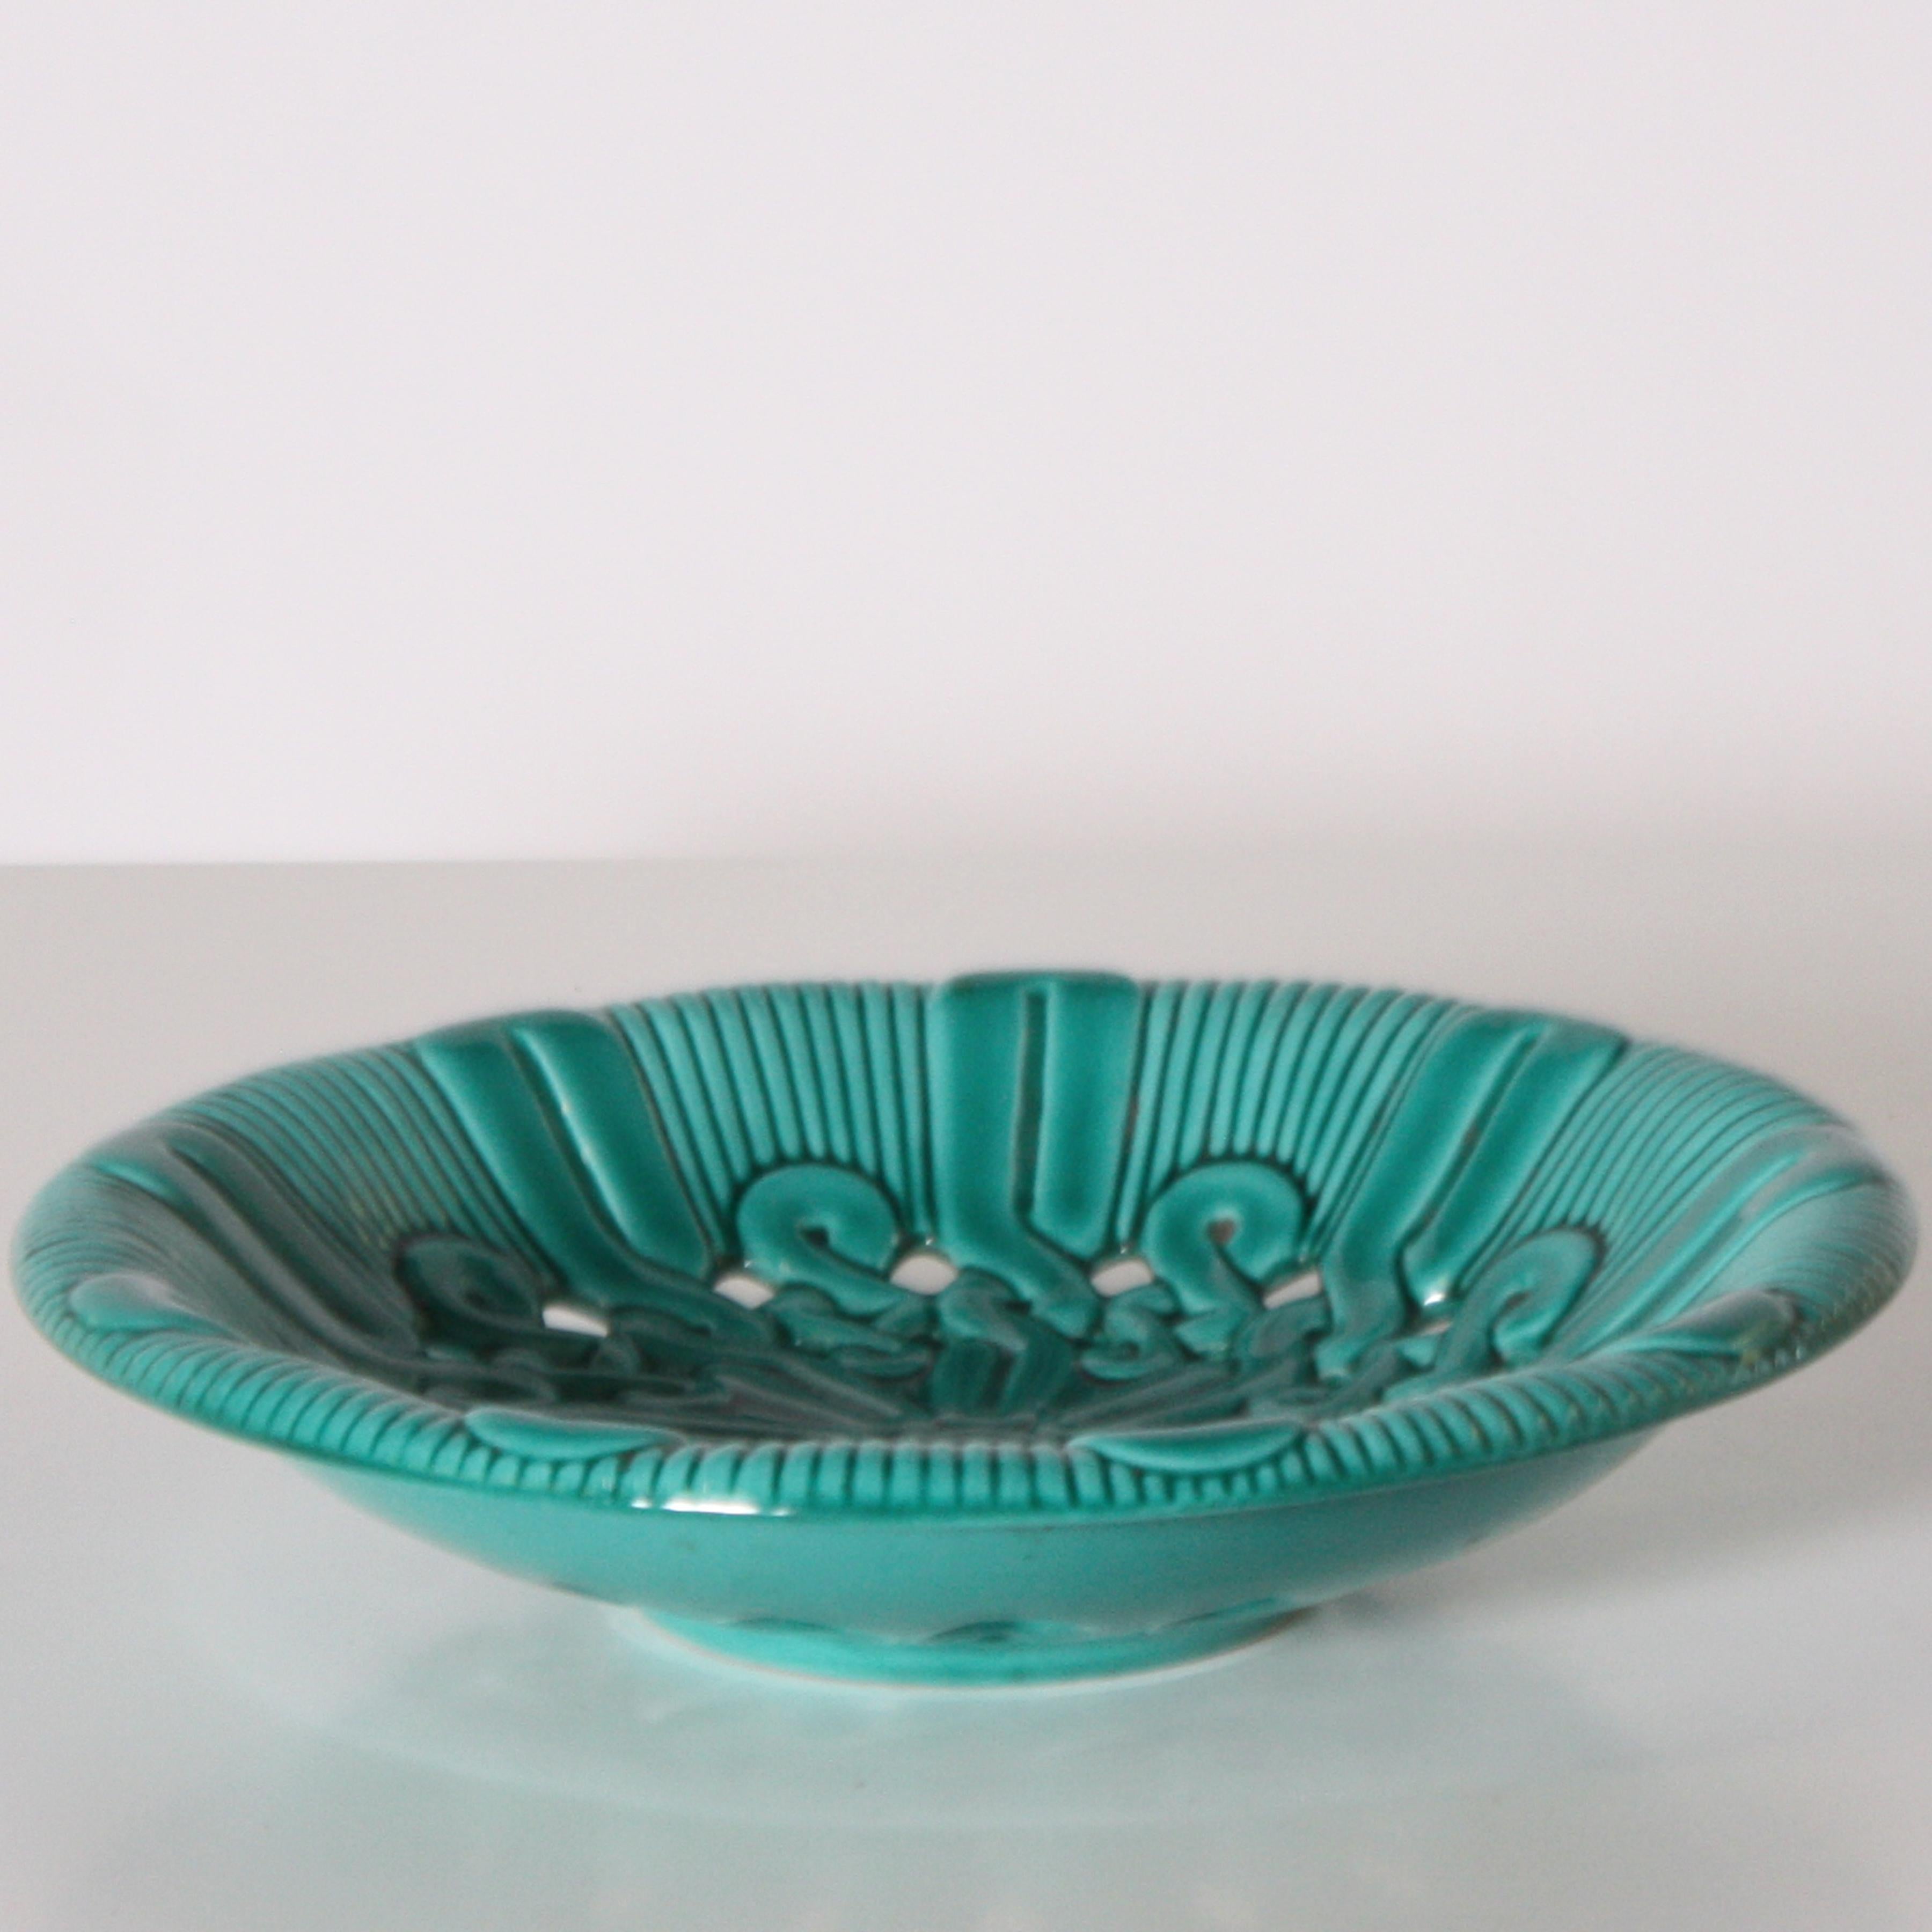 Vallauris blue ceramic bowl, circa 1950.